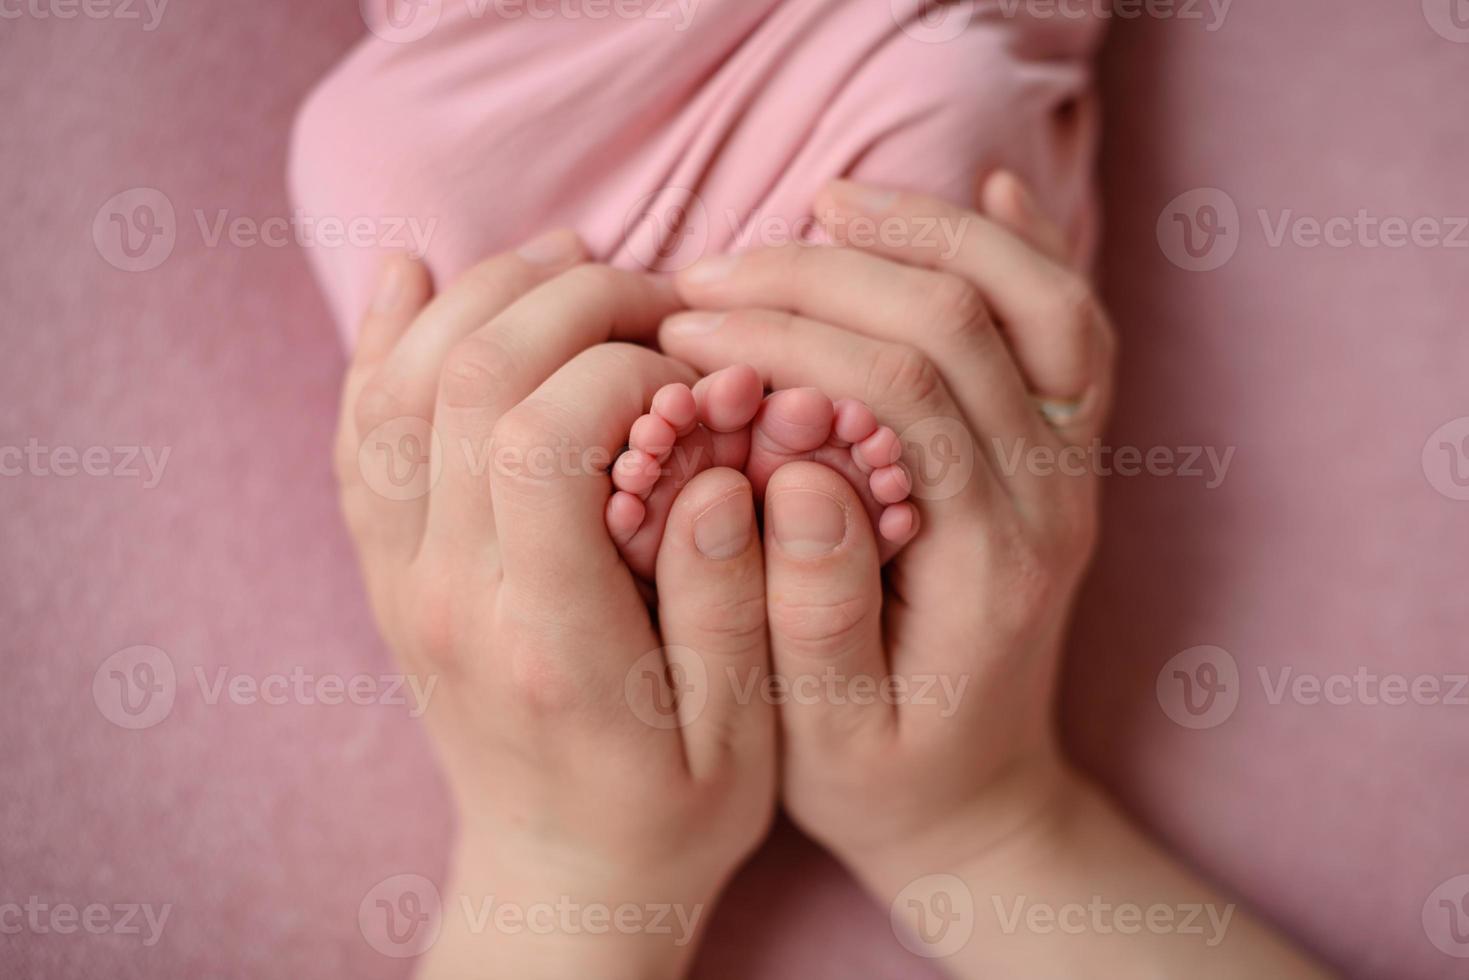 kleine mooie beentjes van een pasgeboren baby in de eerste levensdagen foto